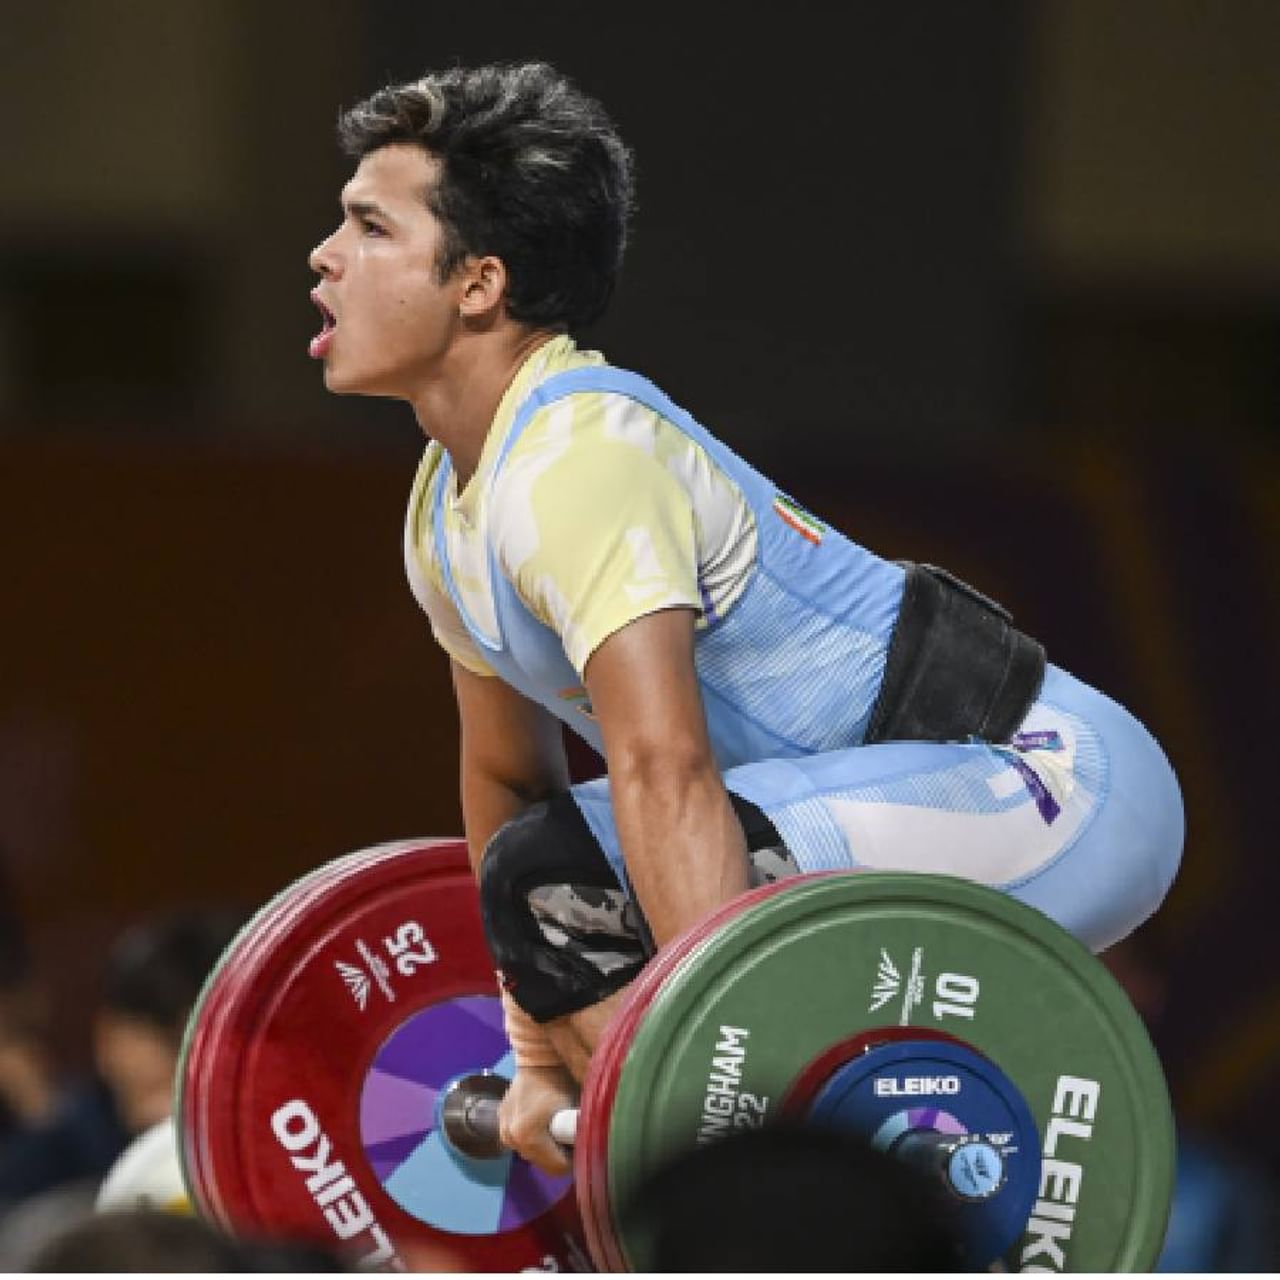 2022 च्या राष्ट्रकुल क्रीडा स्पर्धेत भारताला पाचवे पदक मिळाले आहे. 19 वर्षीय जेरेमी लालरिनुंगाने वेटलिफ्टिंगमध्ये आपले पाचवे पदक जिंकले आहे. जेरेमीने 67 किलो वजनी गटात 300 किलो वजन उचलून सुवर्णपदक जिंकले.
